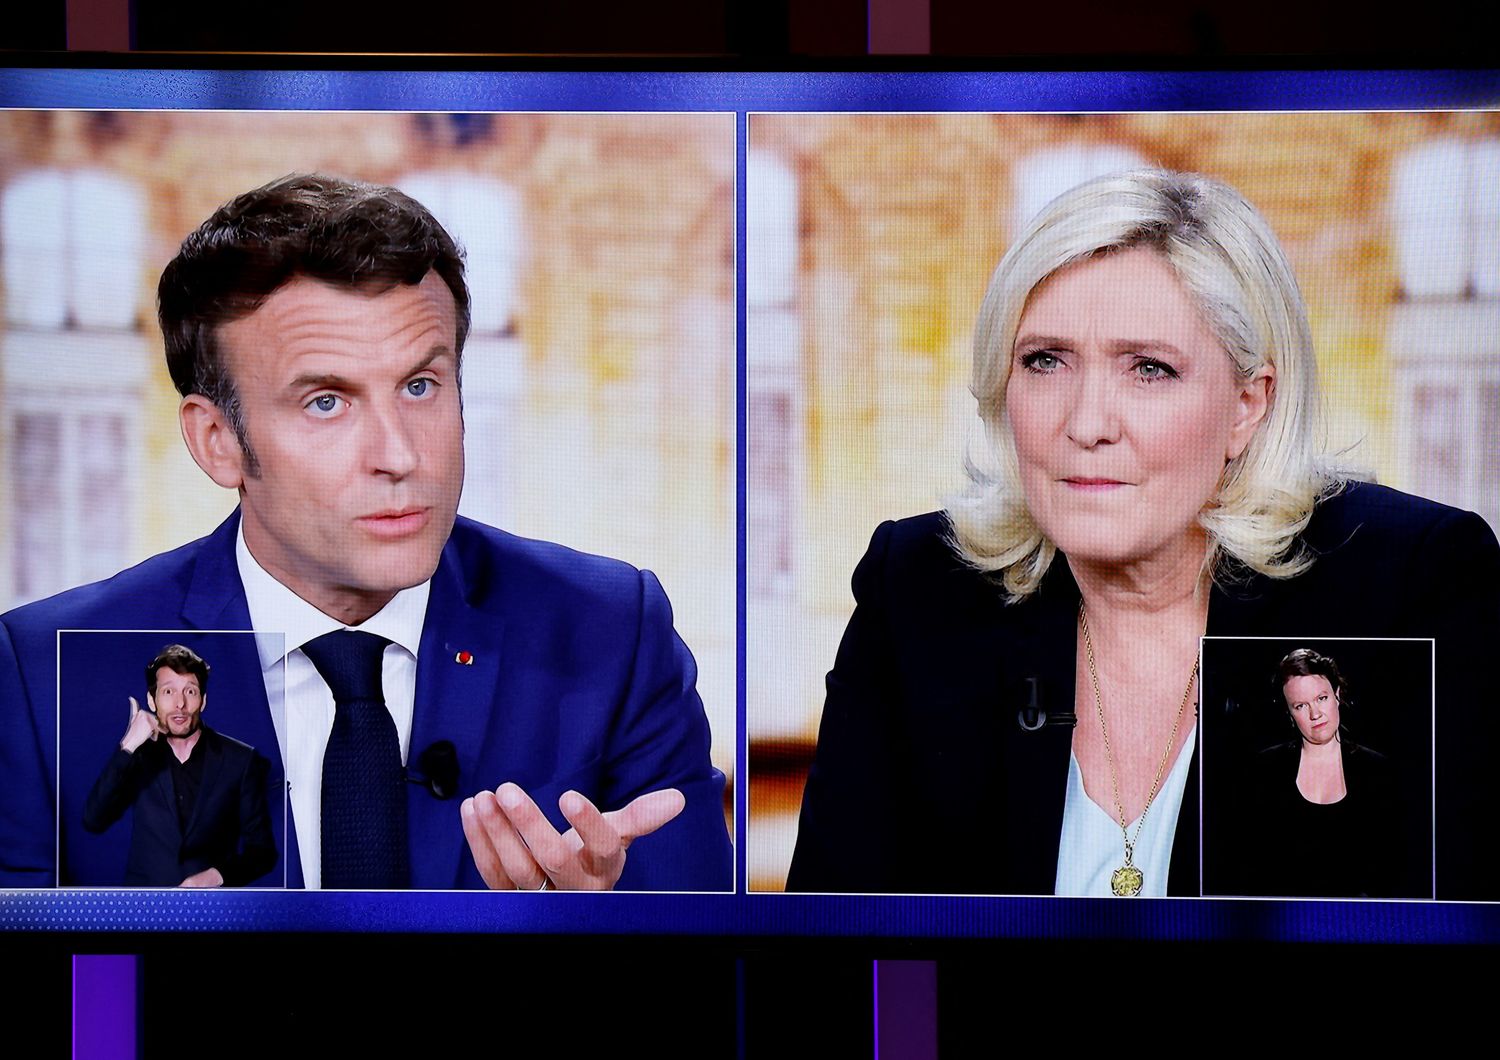 Il duello televisivo tra Emmanuel Macron e Marine Le Pen&nbsp;